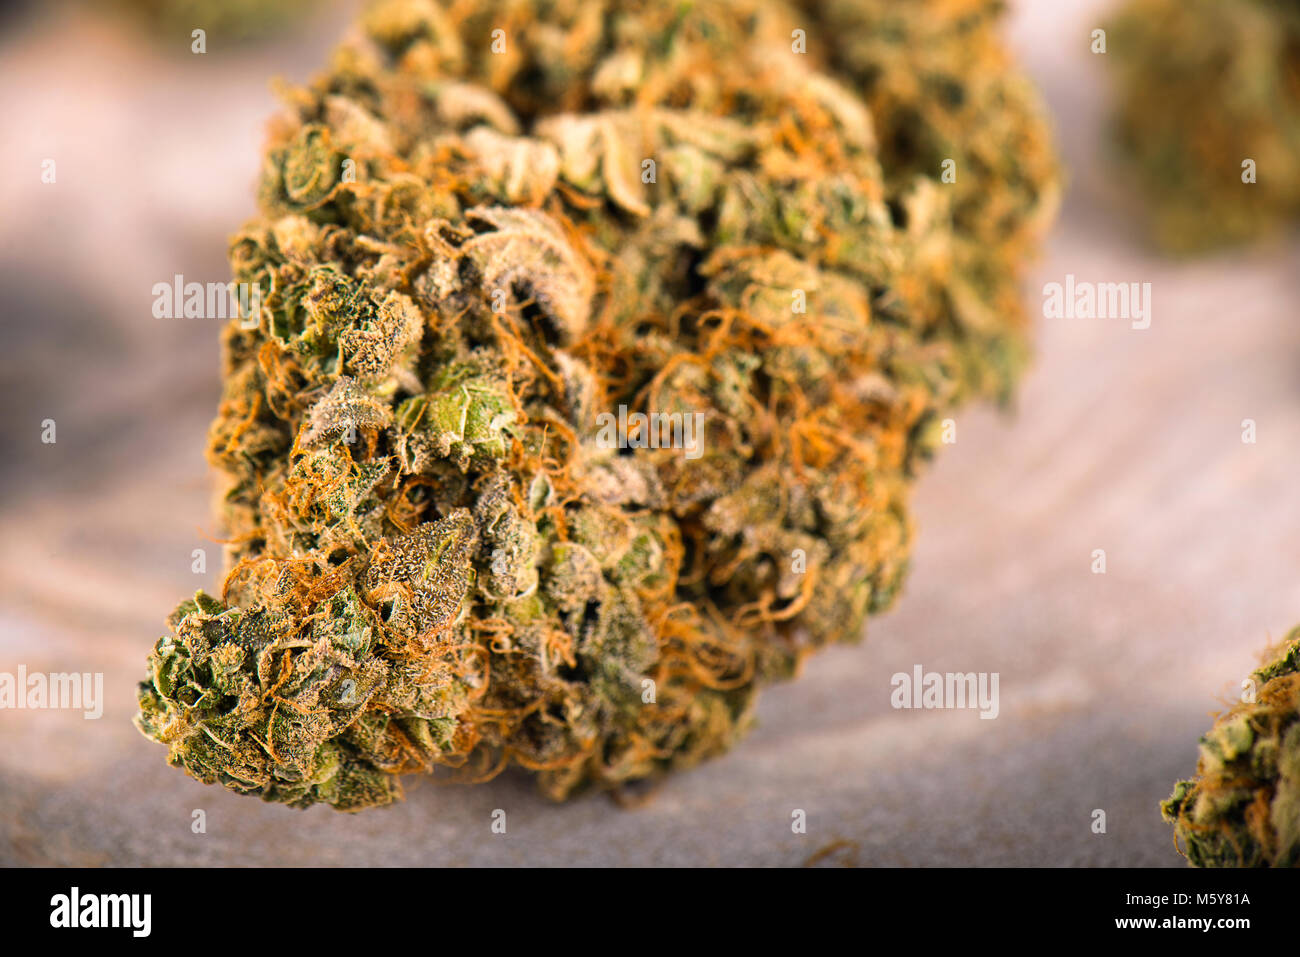 Makro Detail von Cannabis bud (Tag Träumer Belastung) mit sichtbaren Trichome - medizinisches Marihuana Dispensary Konzept Stockfoto